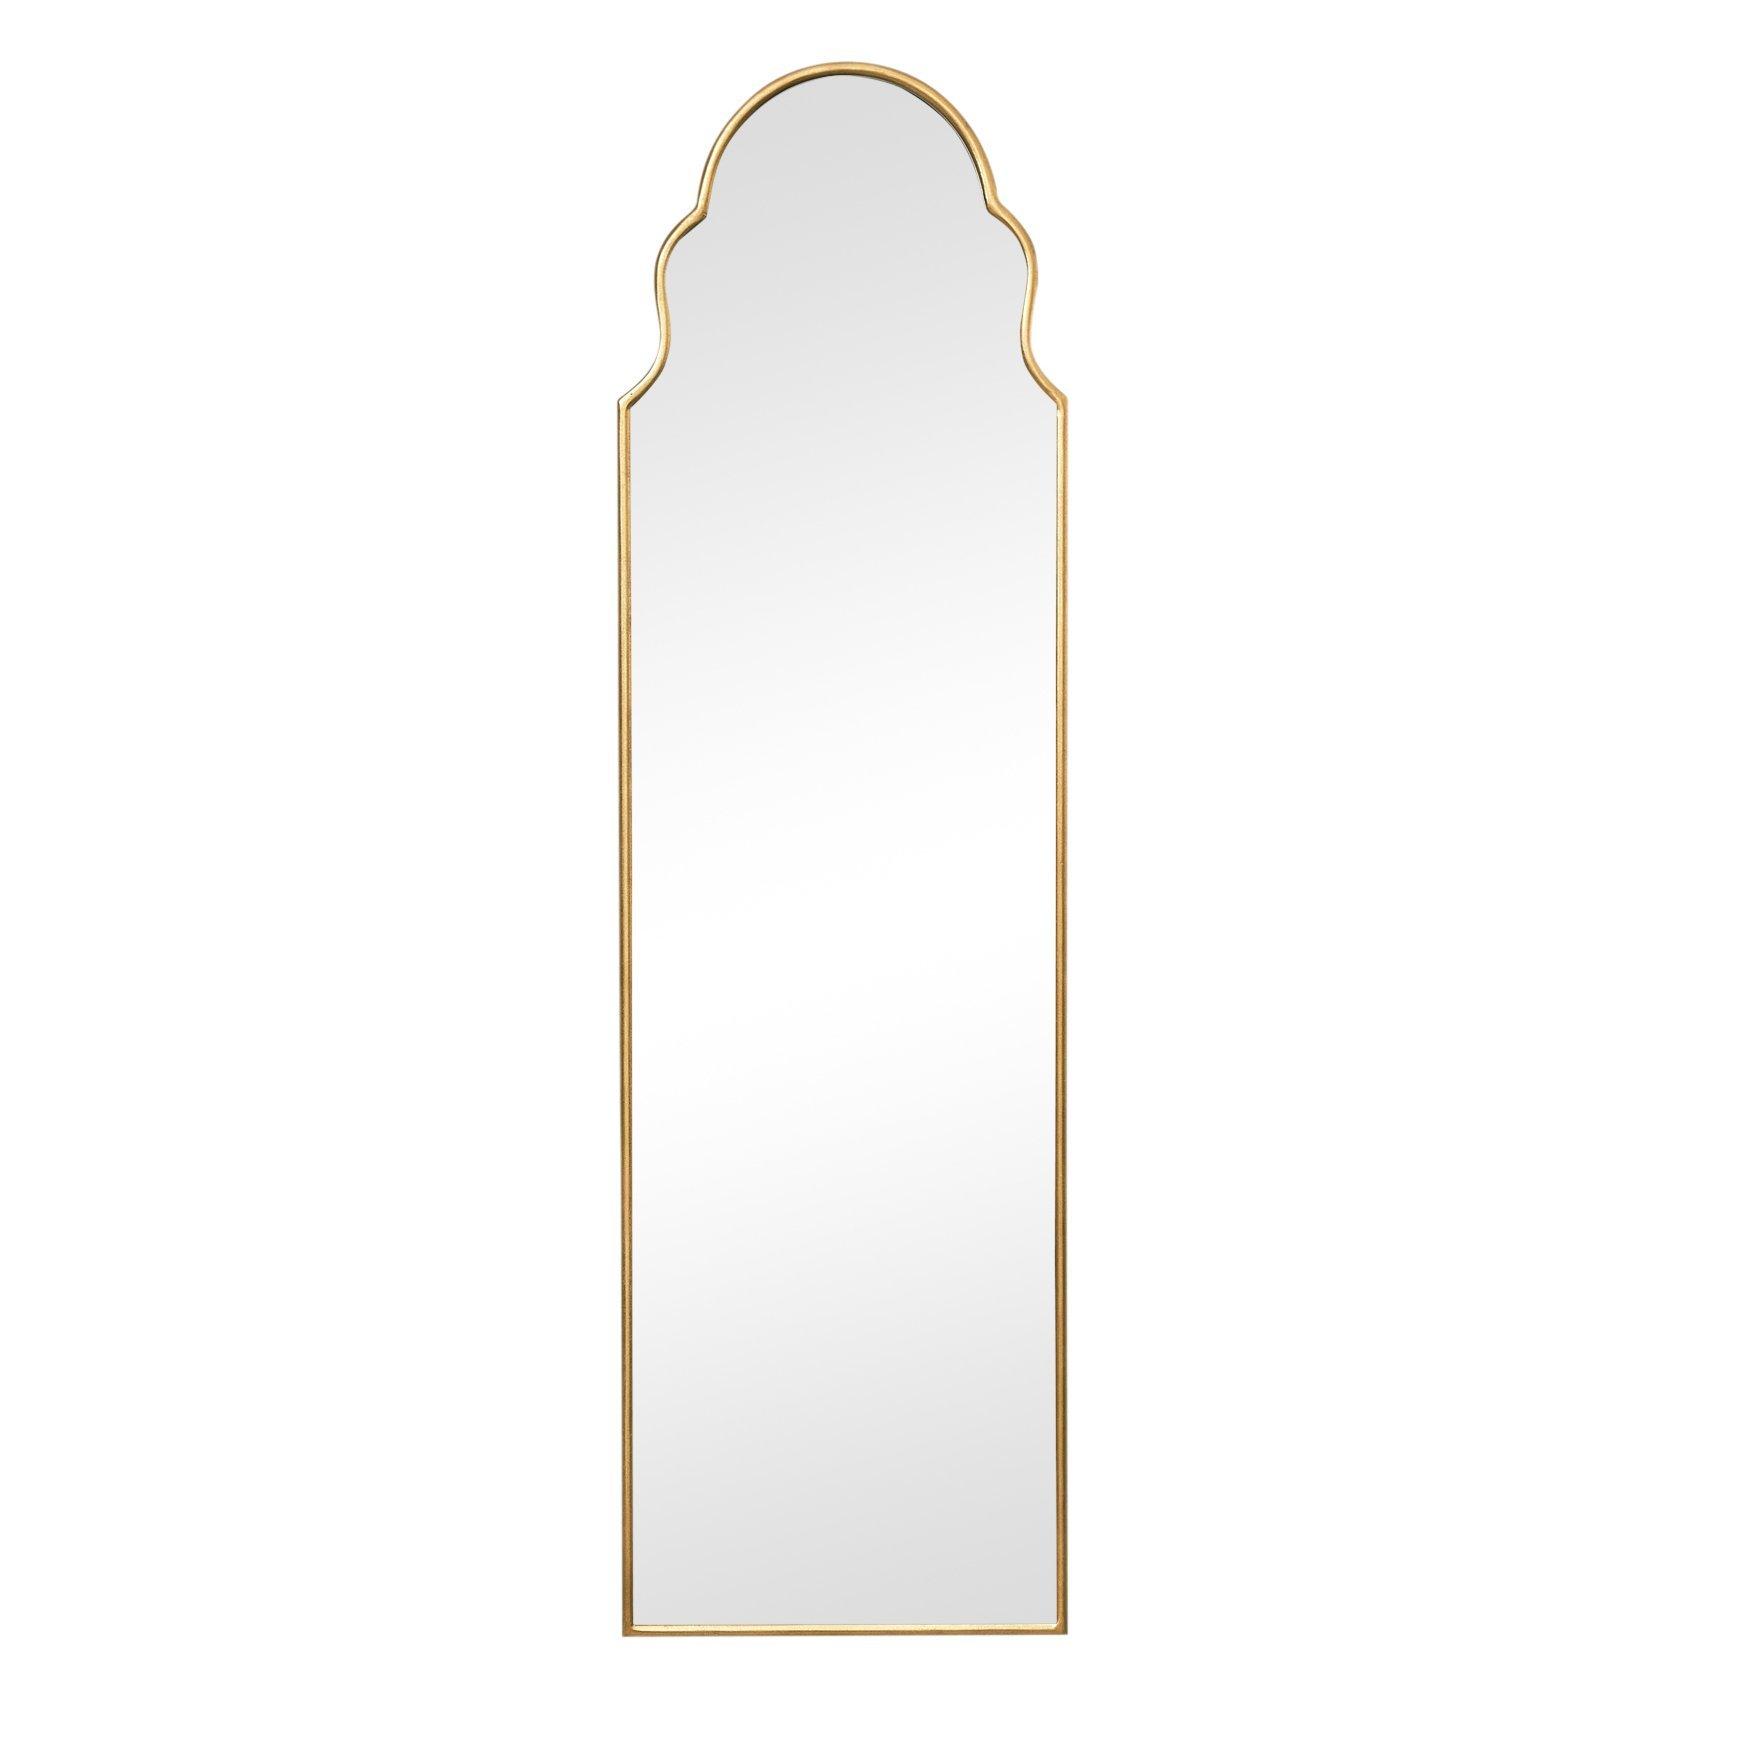 Tall Slim Gold Arch Wall Mirror 133cm X 38cm